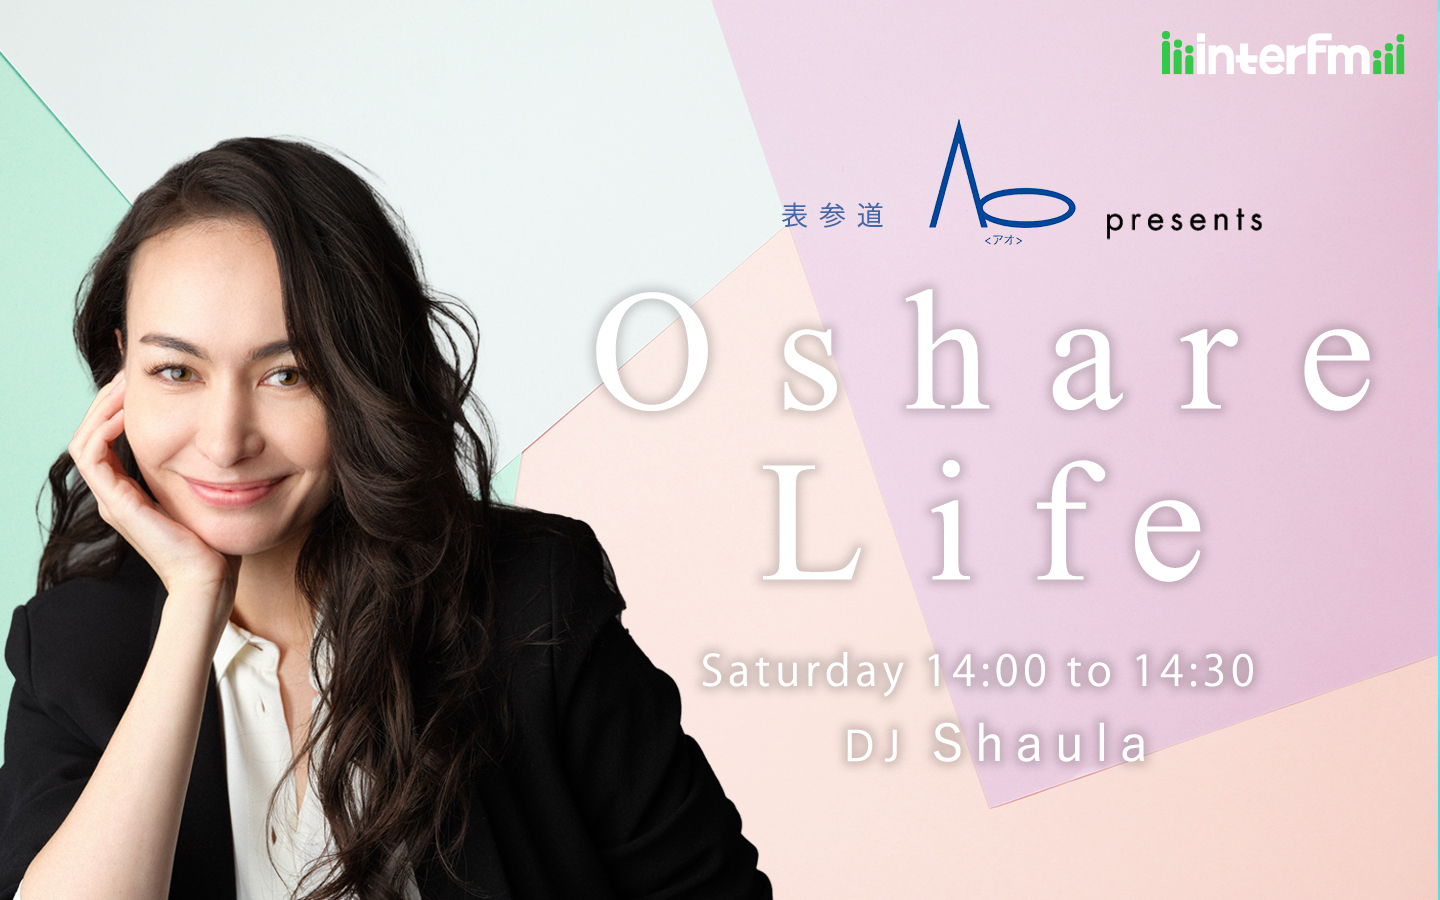 表参道Ao presents Oshare Life